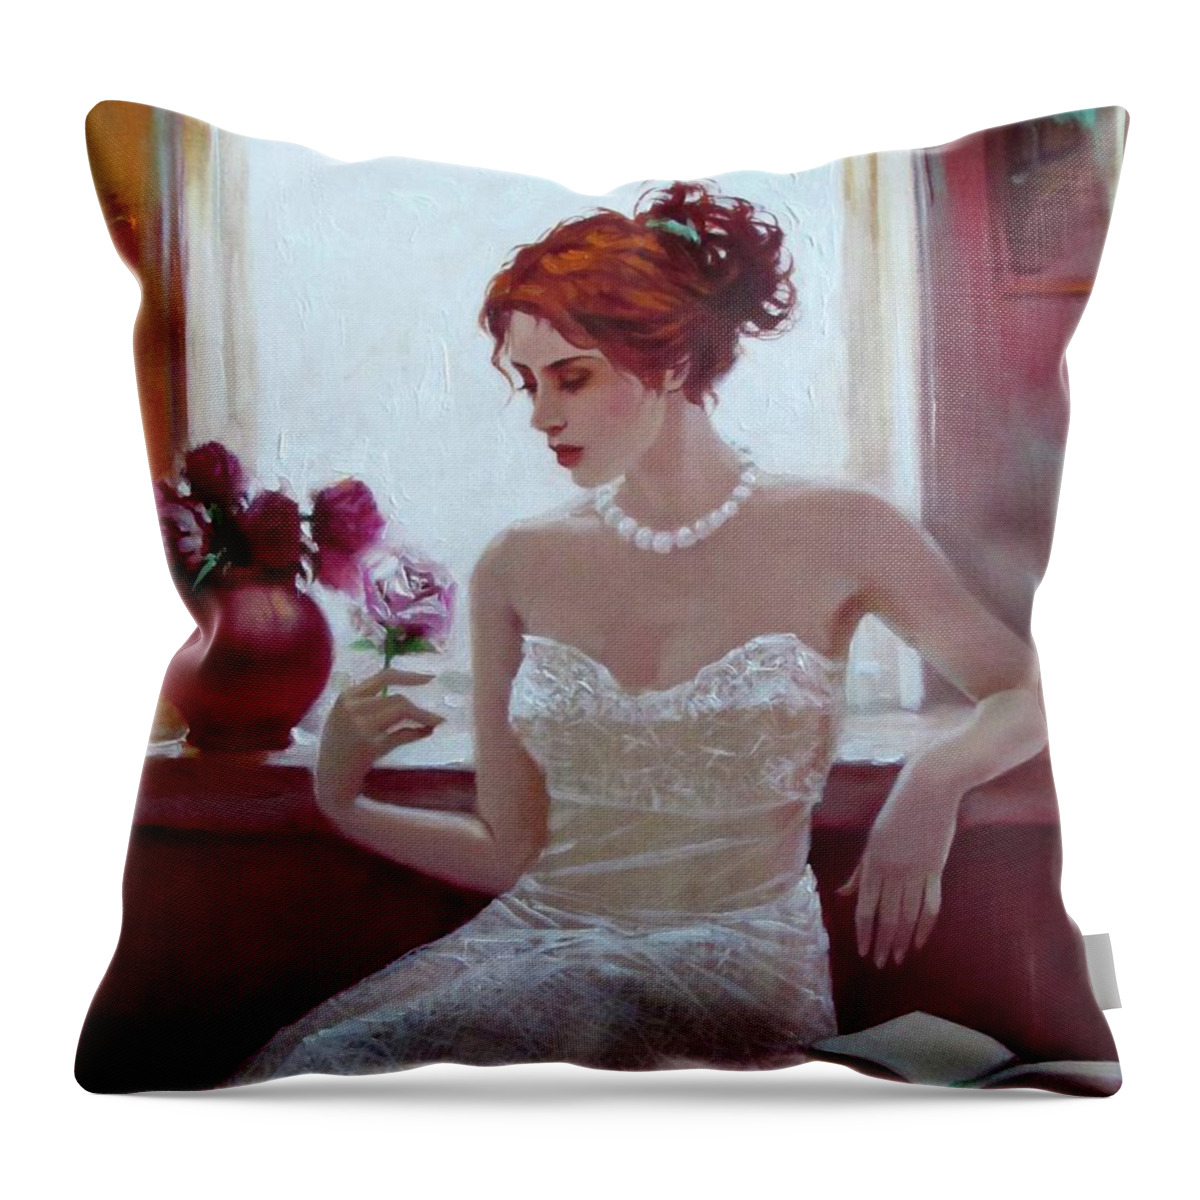 Ignatenko Throw Pillow featuring the painting White rose by Sergey Ignatenko